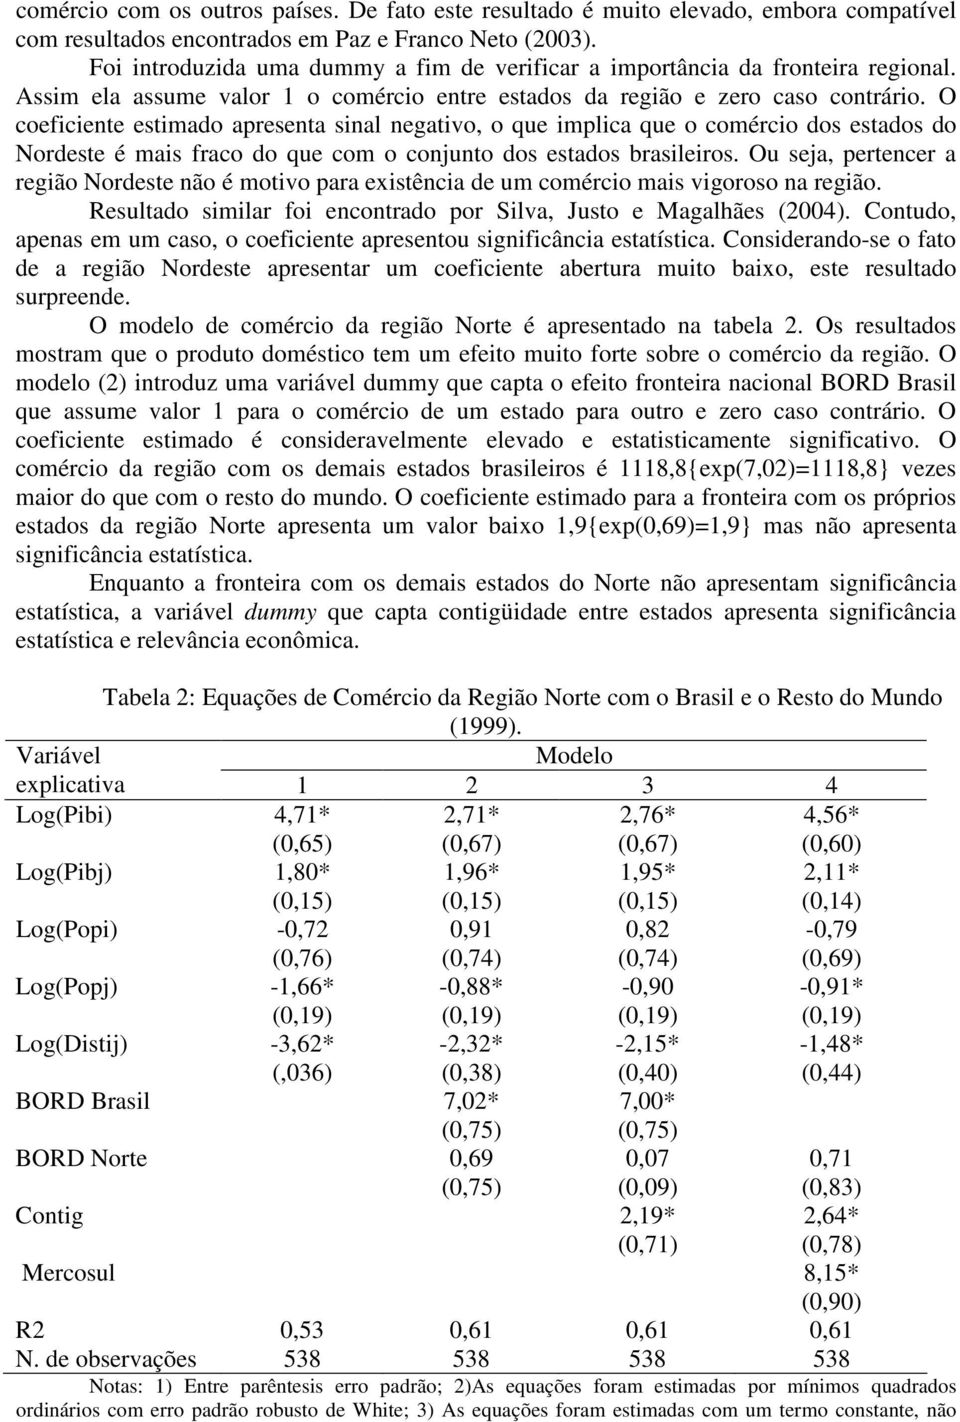 O coeficiente estimado apresenta sinal negativo, o que implica que o comércio dos estados do Nordeste é mais fraco do que com o conjunto dos estados brasileiros.